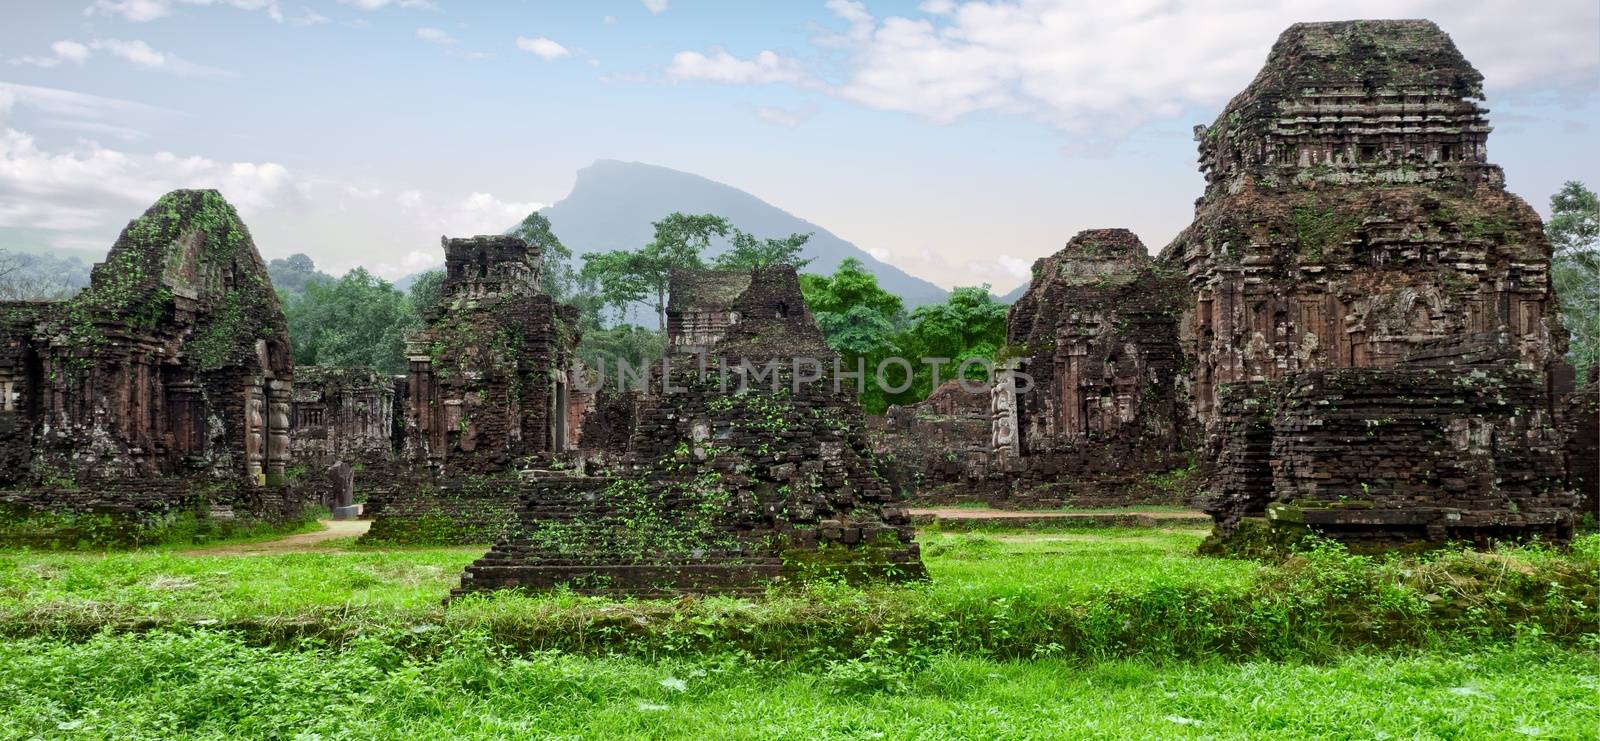 my son hindu ruins in vietnam landscape